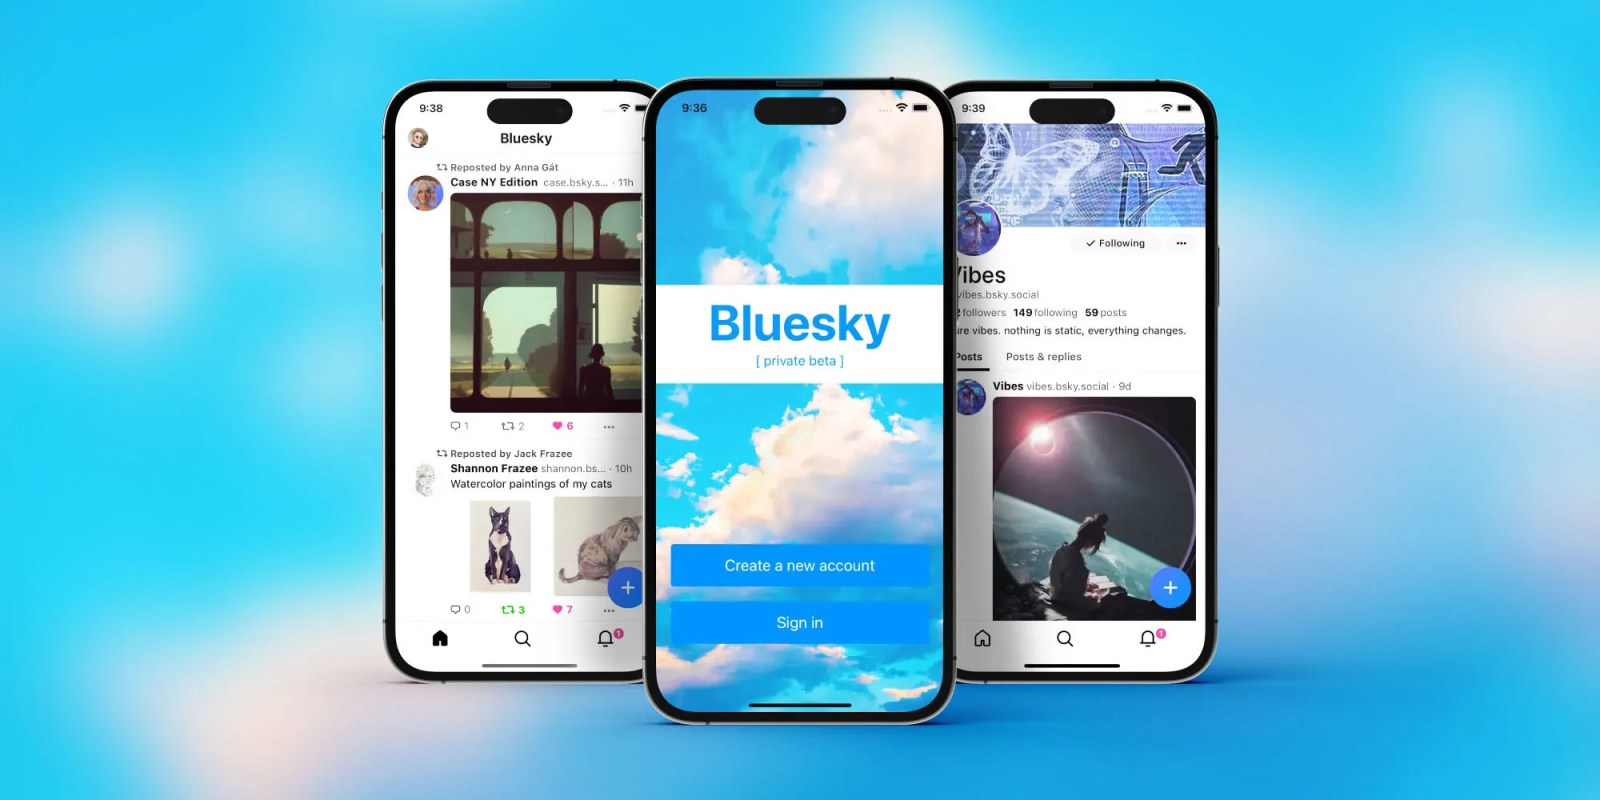 Bluesky насчитывает 2 миллиона пользователей |  Промо-изображение со скриншотами